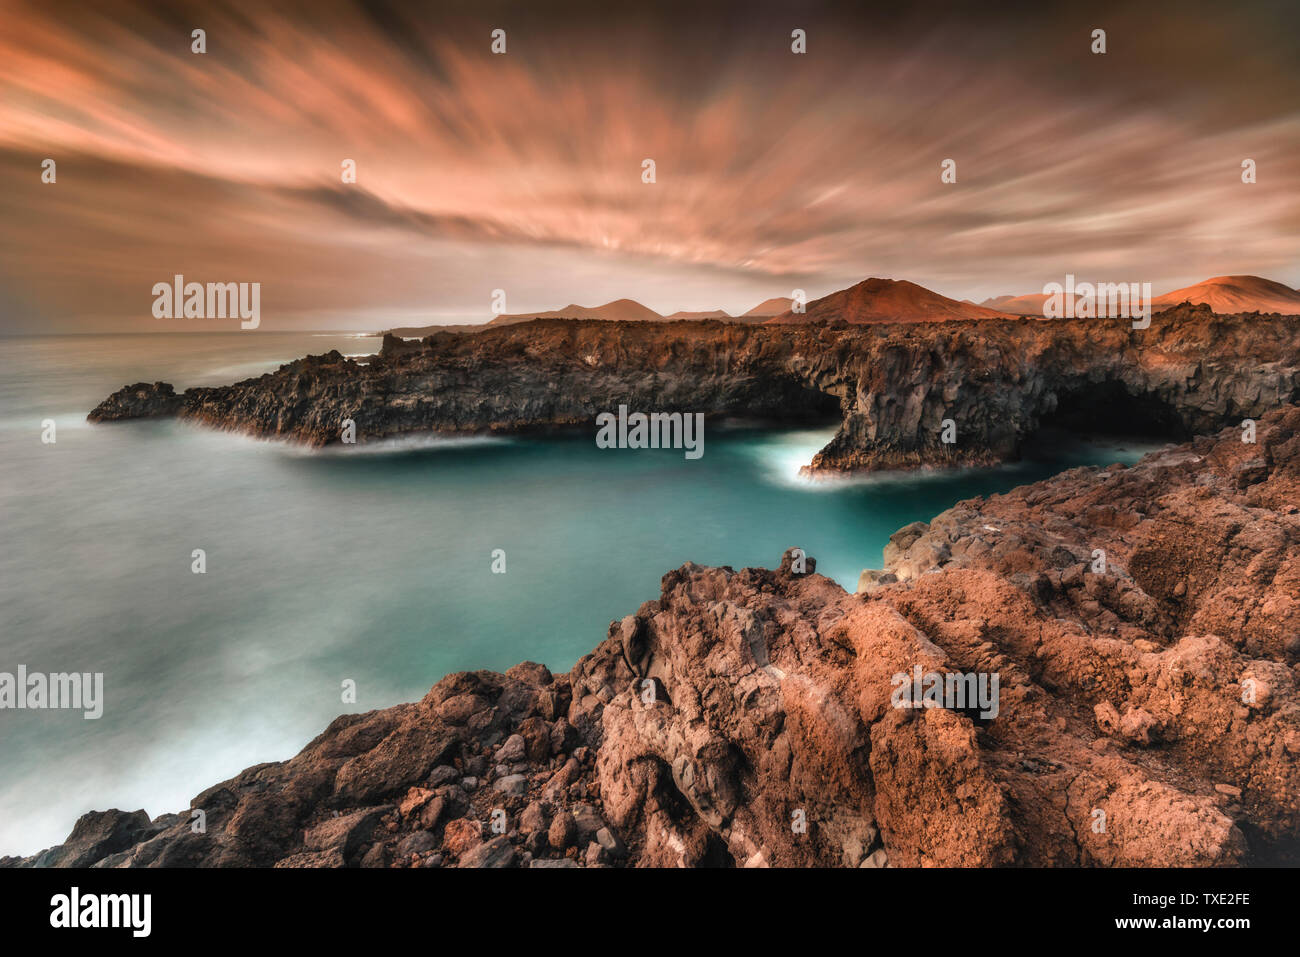 Spagna Isole Canarie - Lanzatote costa di rocce laviche Foto Stock